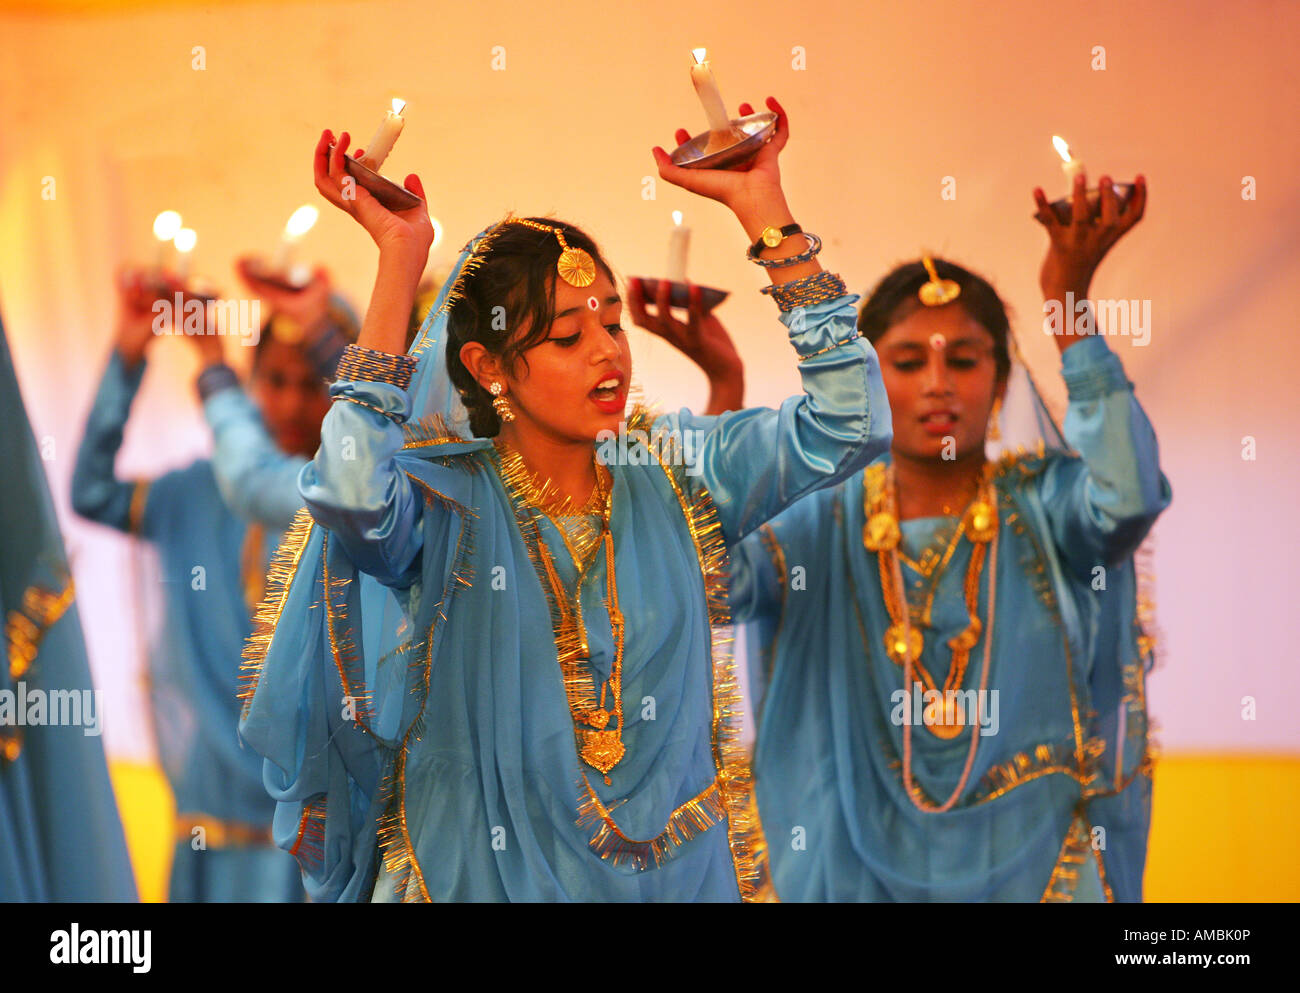 L'Inde, Bodhgaya, jeunes filles effectuant une danse culturelle Banque D'Images